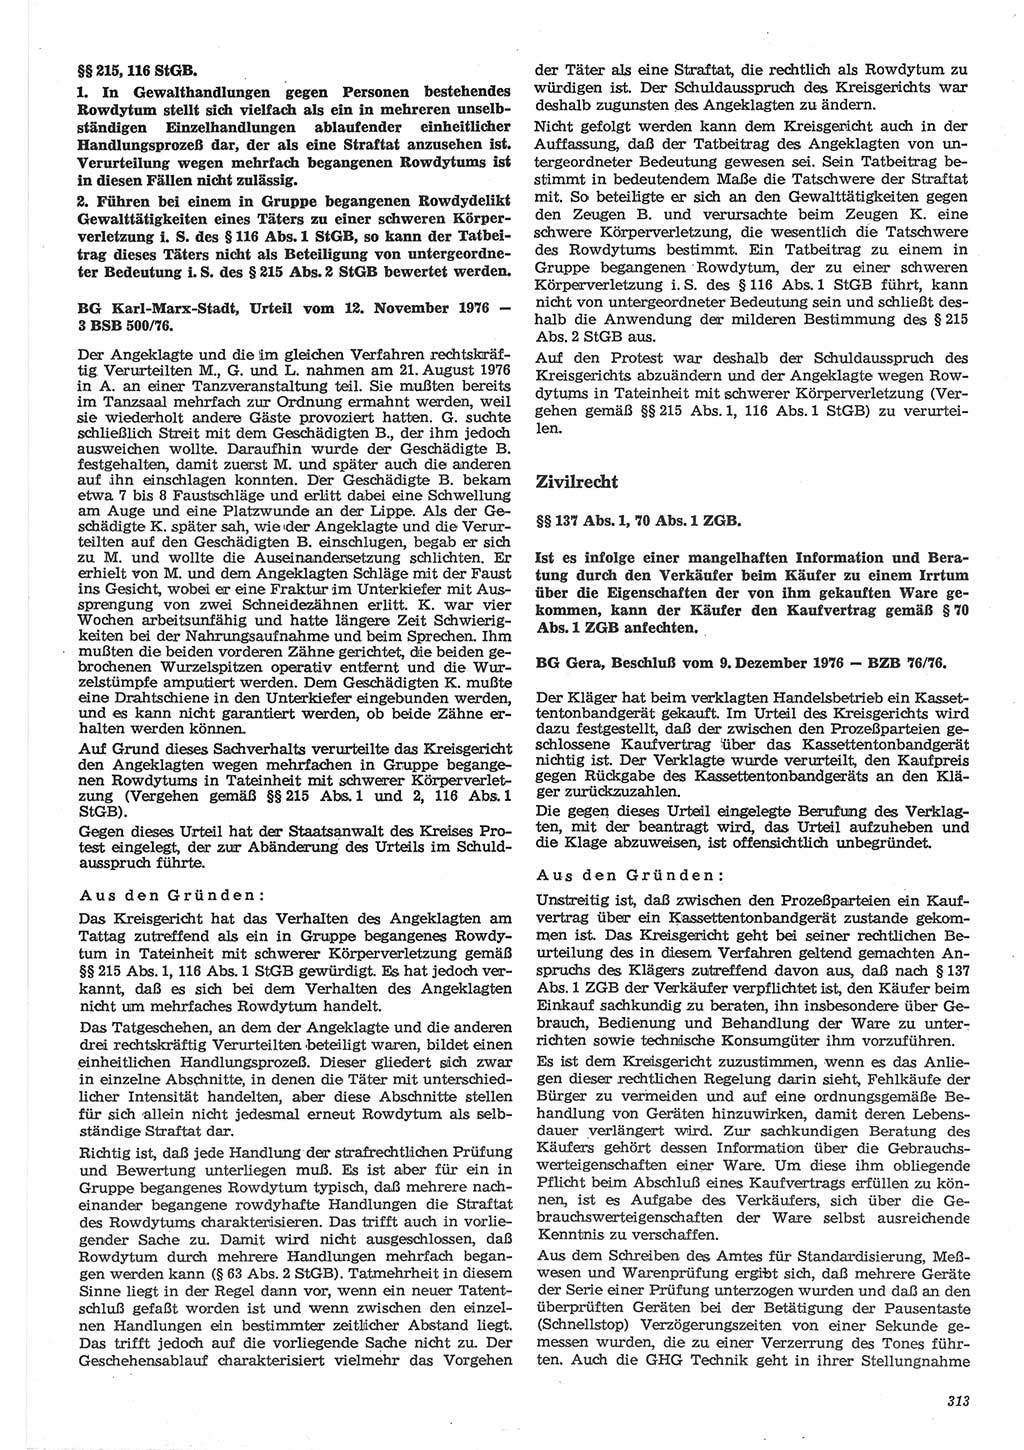 Neue Justiz (NJ), Zeitschrift für Recht und Rechtswissenschaft-Zeitschrift, sozialistisches Recht und Gesetzlichkeit, 31. Jahrgang 1977, Seite 313 (NJ DDR 1977, S. 313)